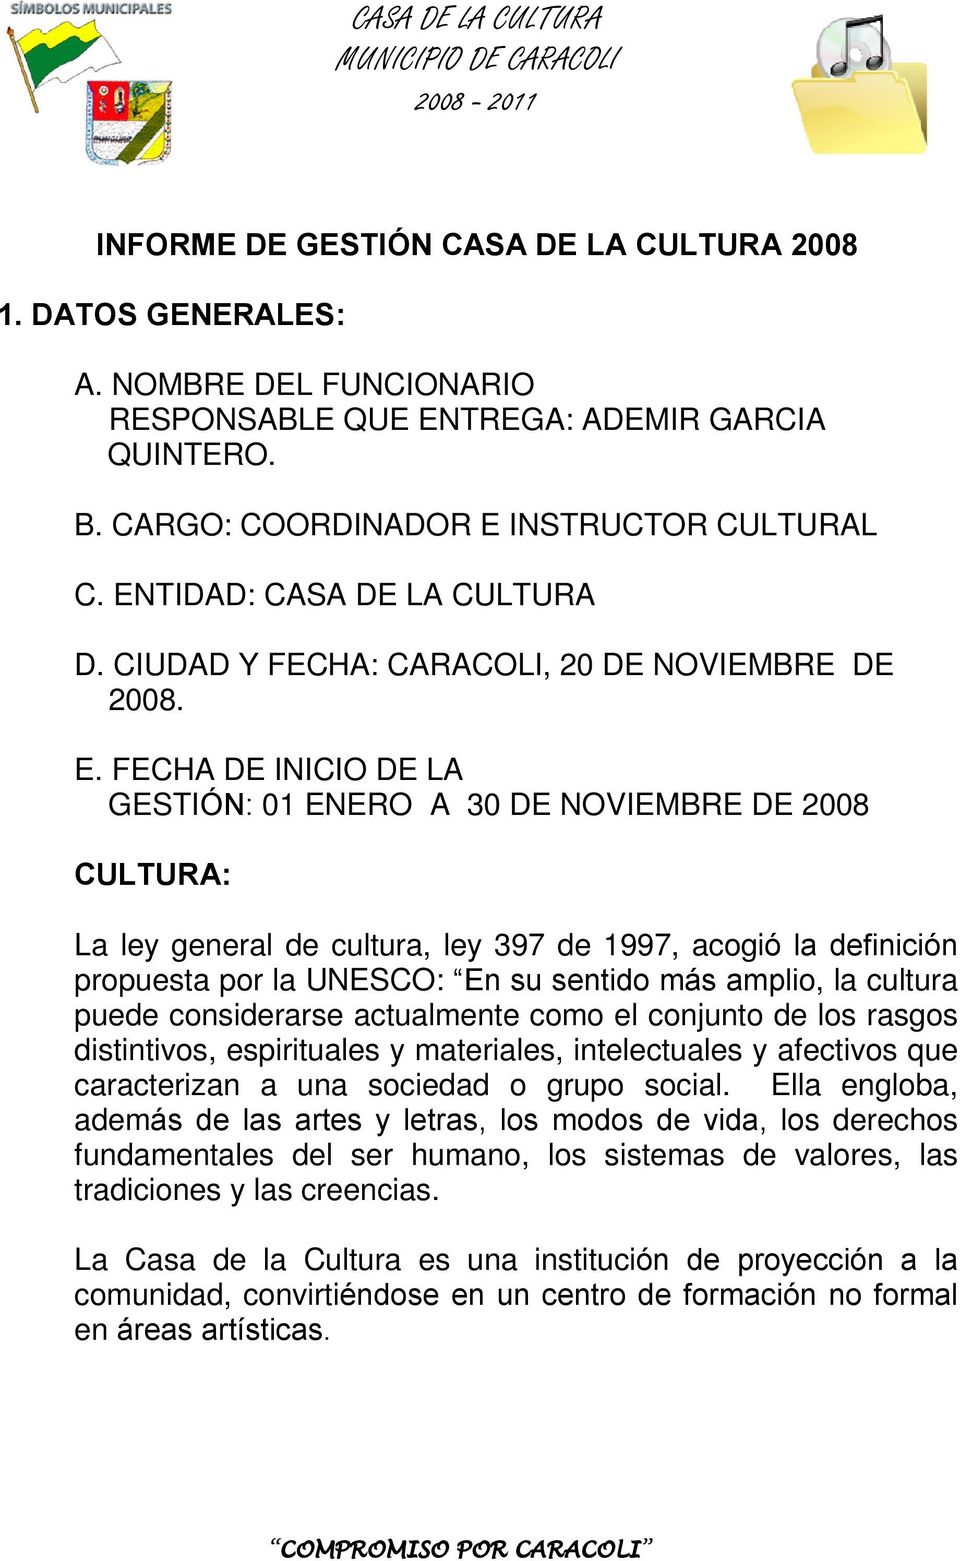 FECHA DE INICIO DE LA GESTIÓN: 01 ENERO A 30 DE NOVIEMBRE DE 2008 CULTURA: La ley general de cultura, ley 397 de 1997, acogió la definición propuesta por la UNESCO: En su sentido más amplio, la